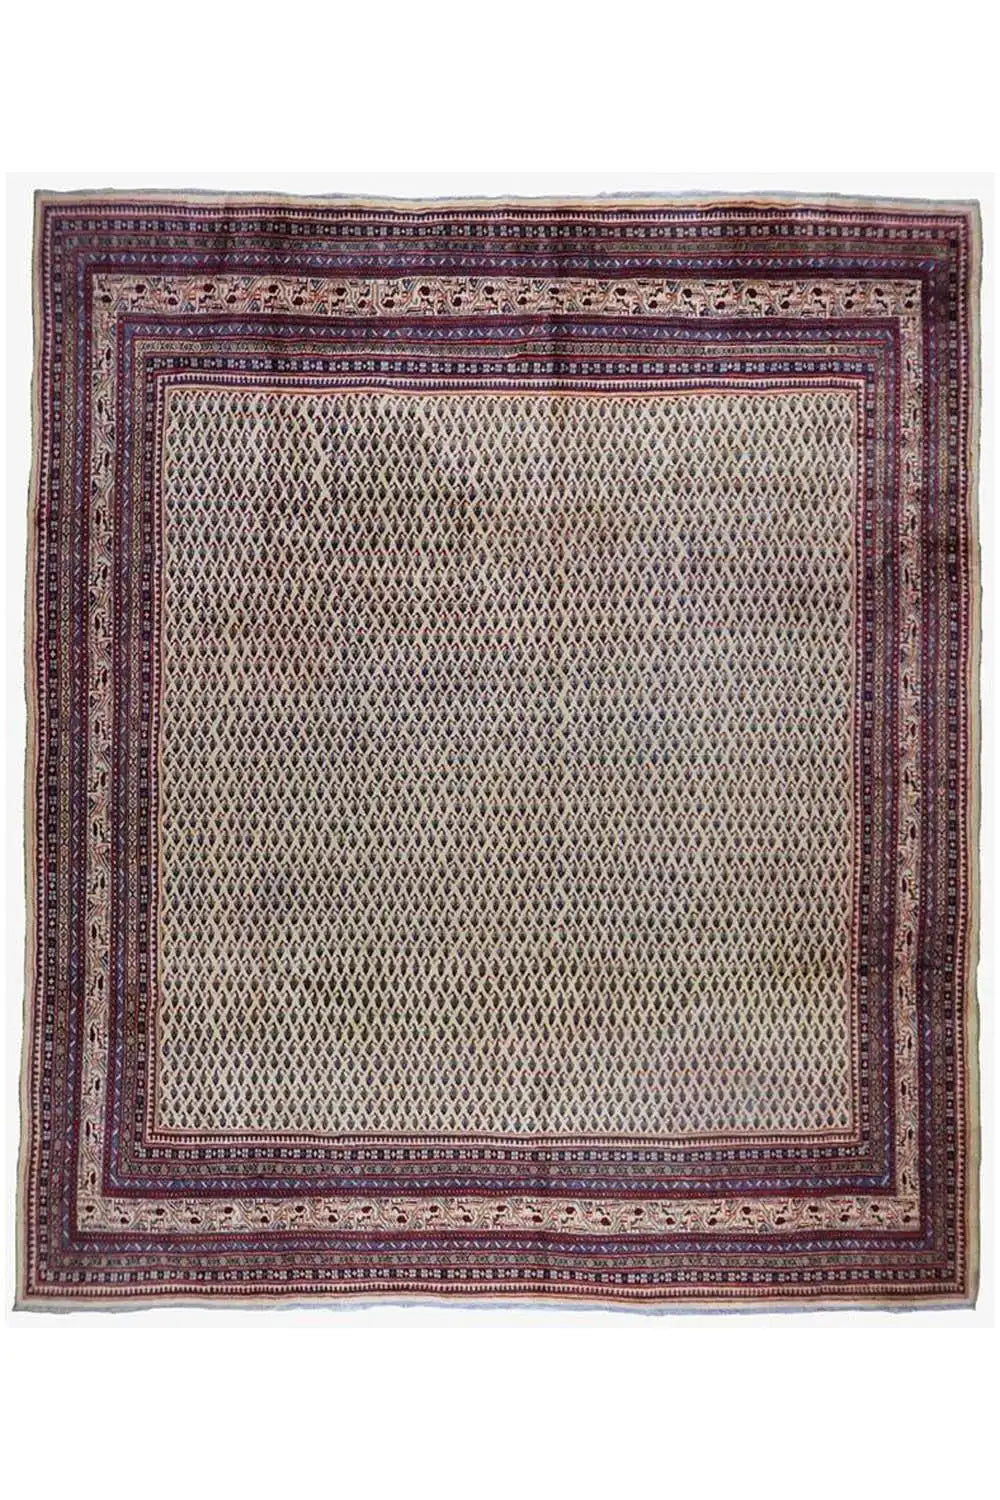 Arak - Botte Mir (315x280cm) - German Carpet Shop